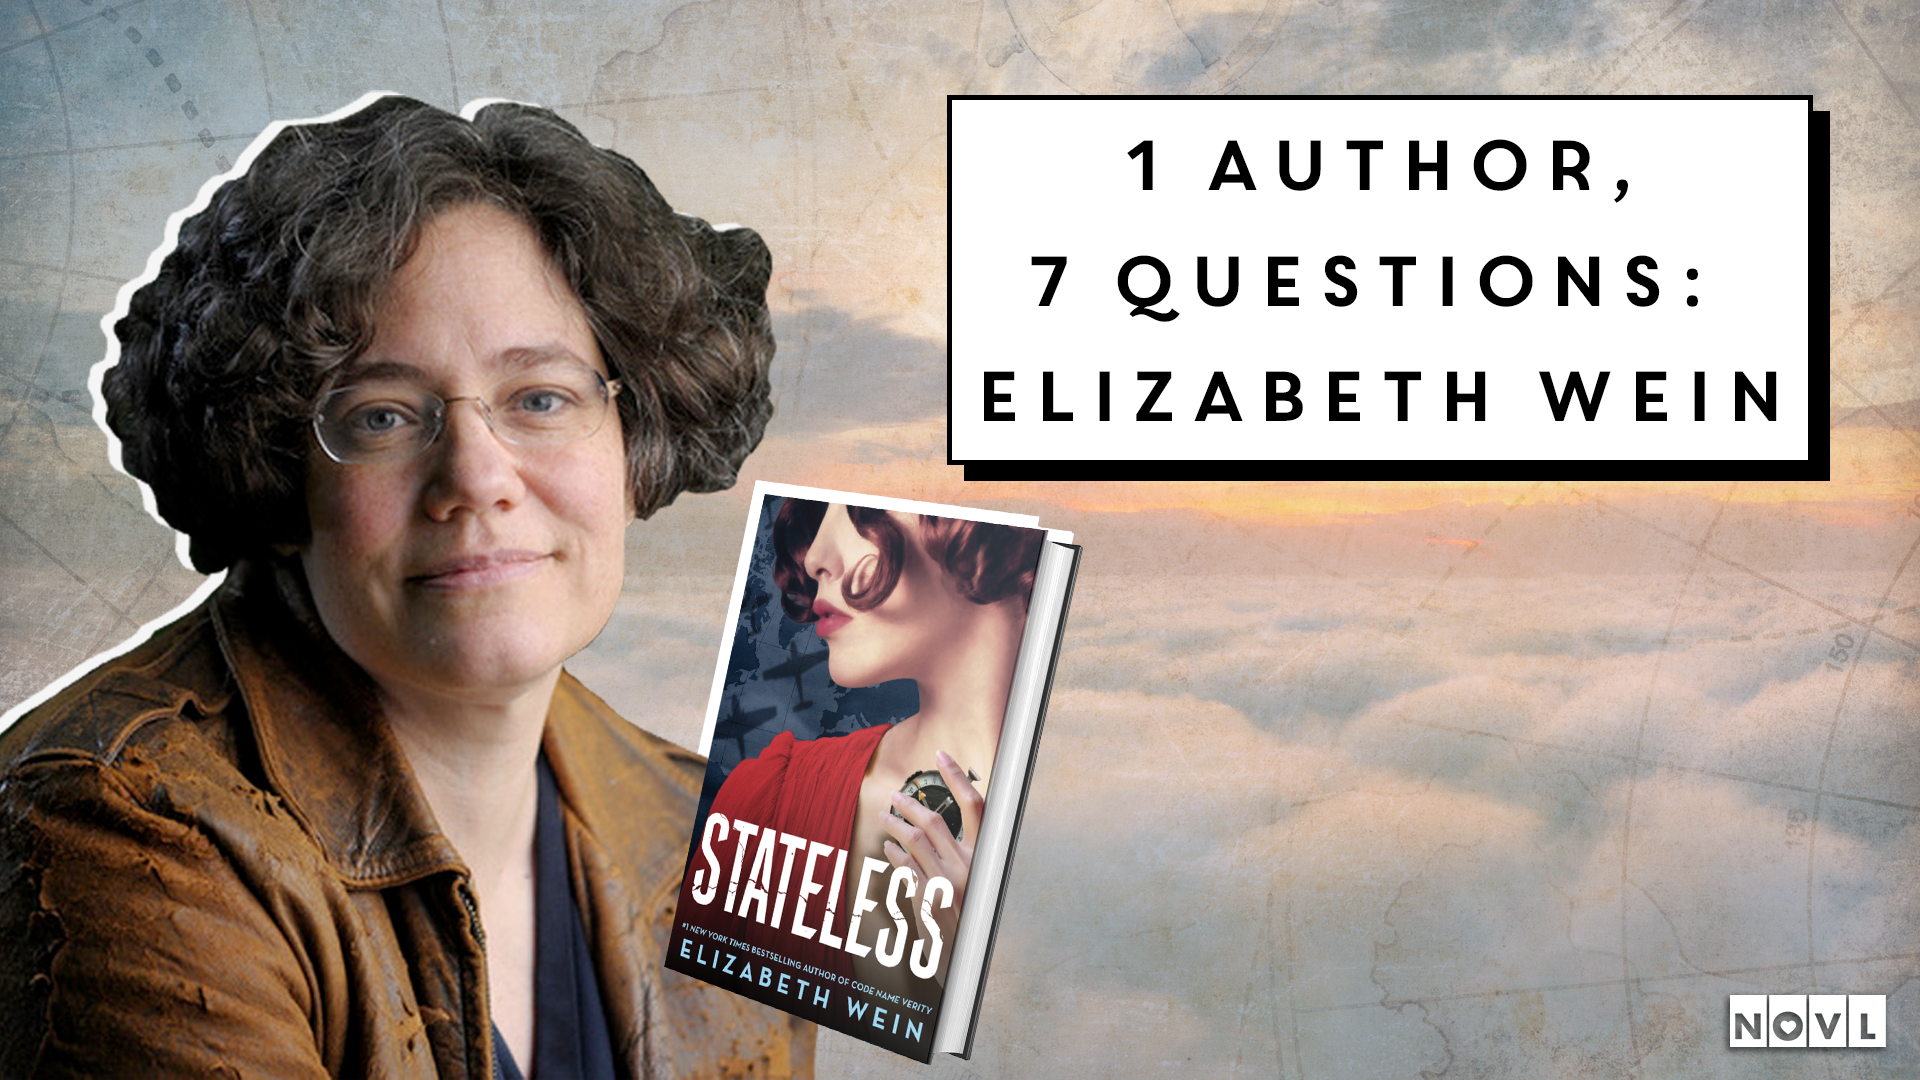 NOVL - 1 Author 7 Questions Elizabeth Wein